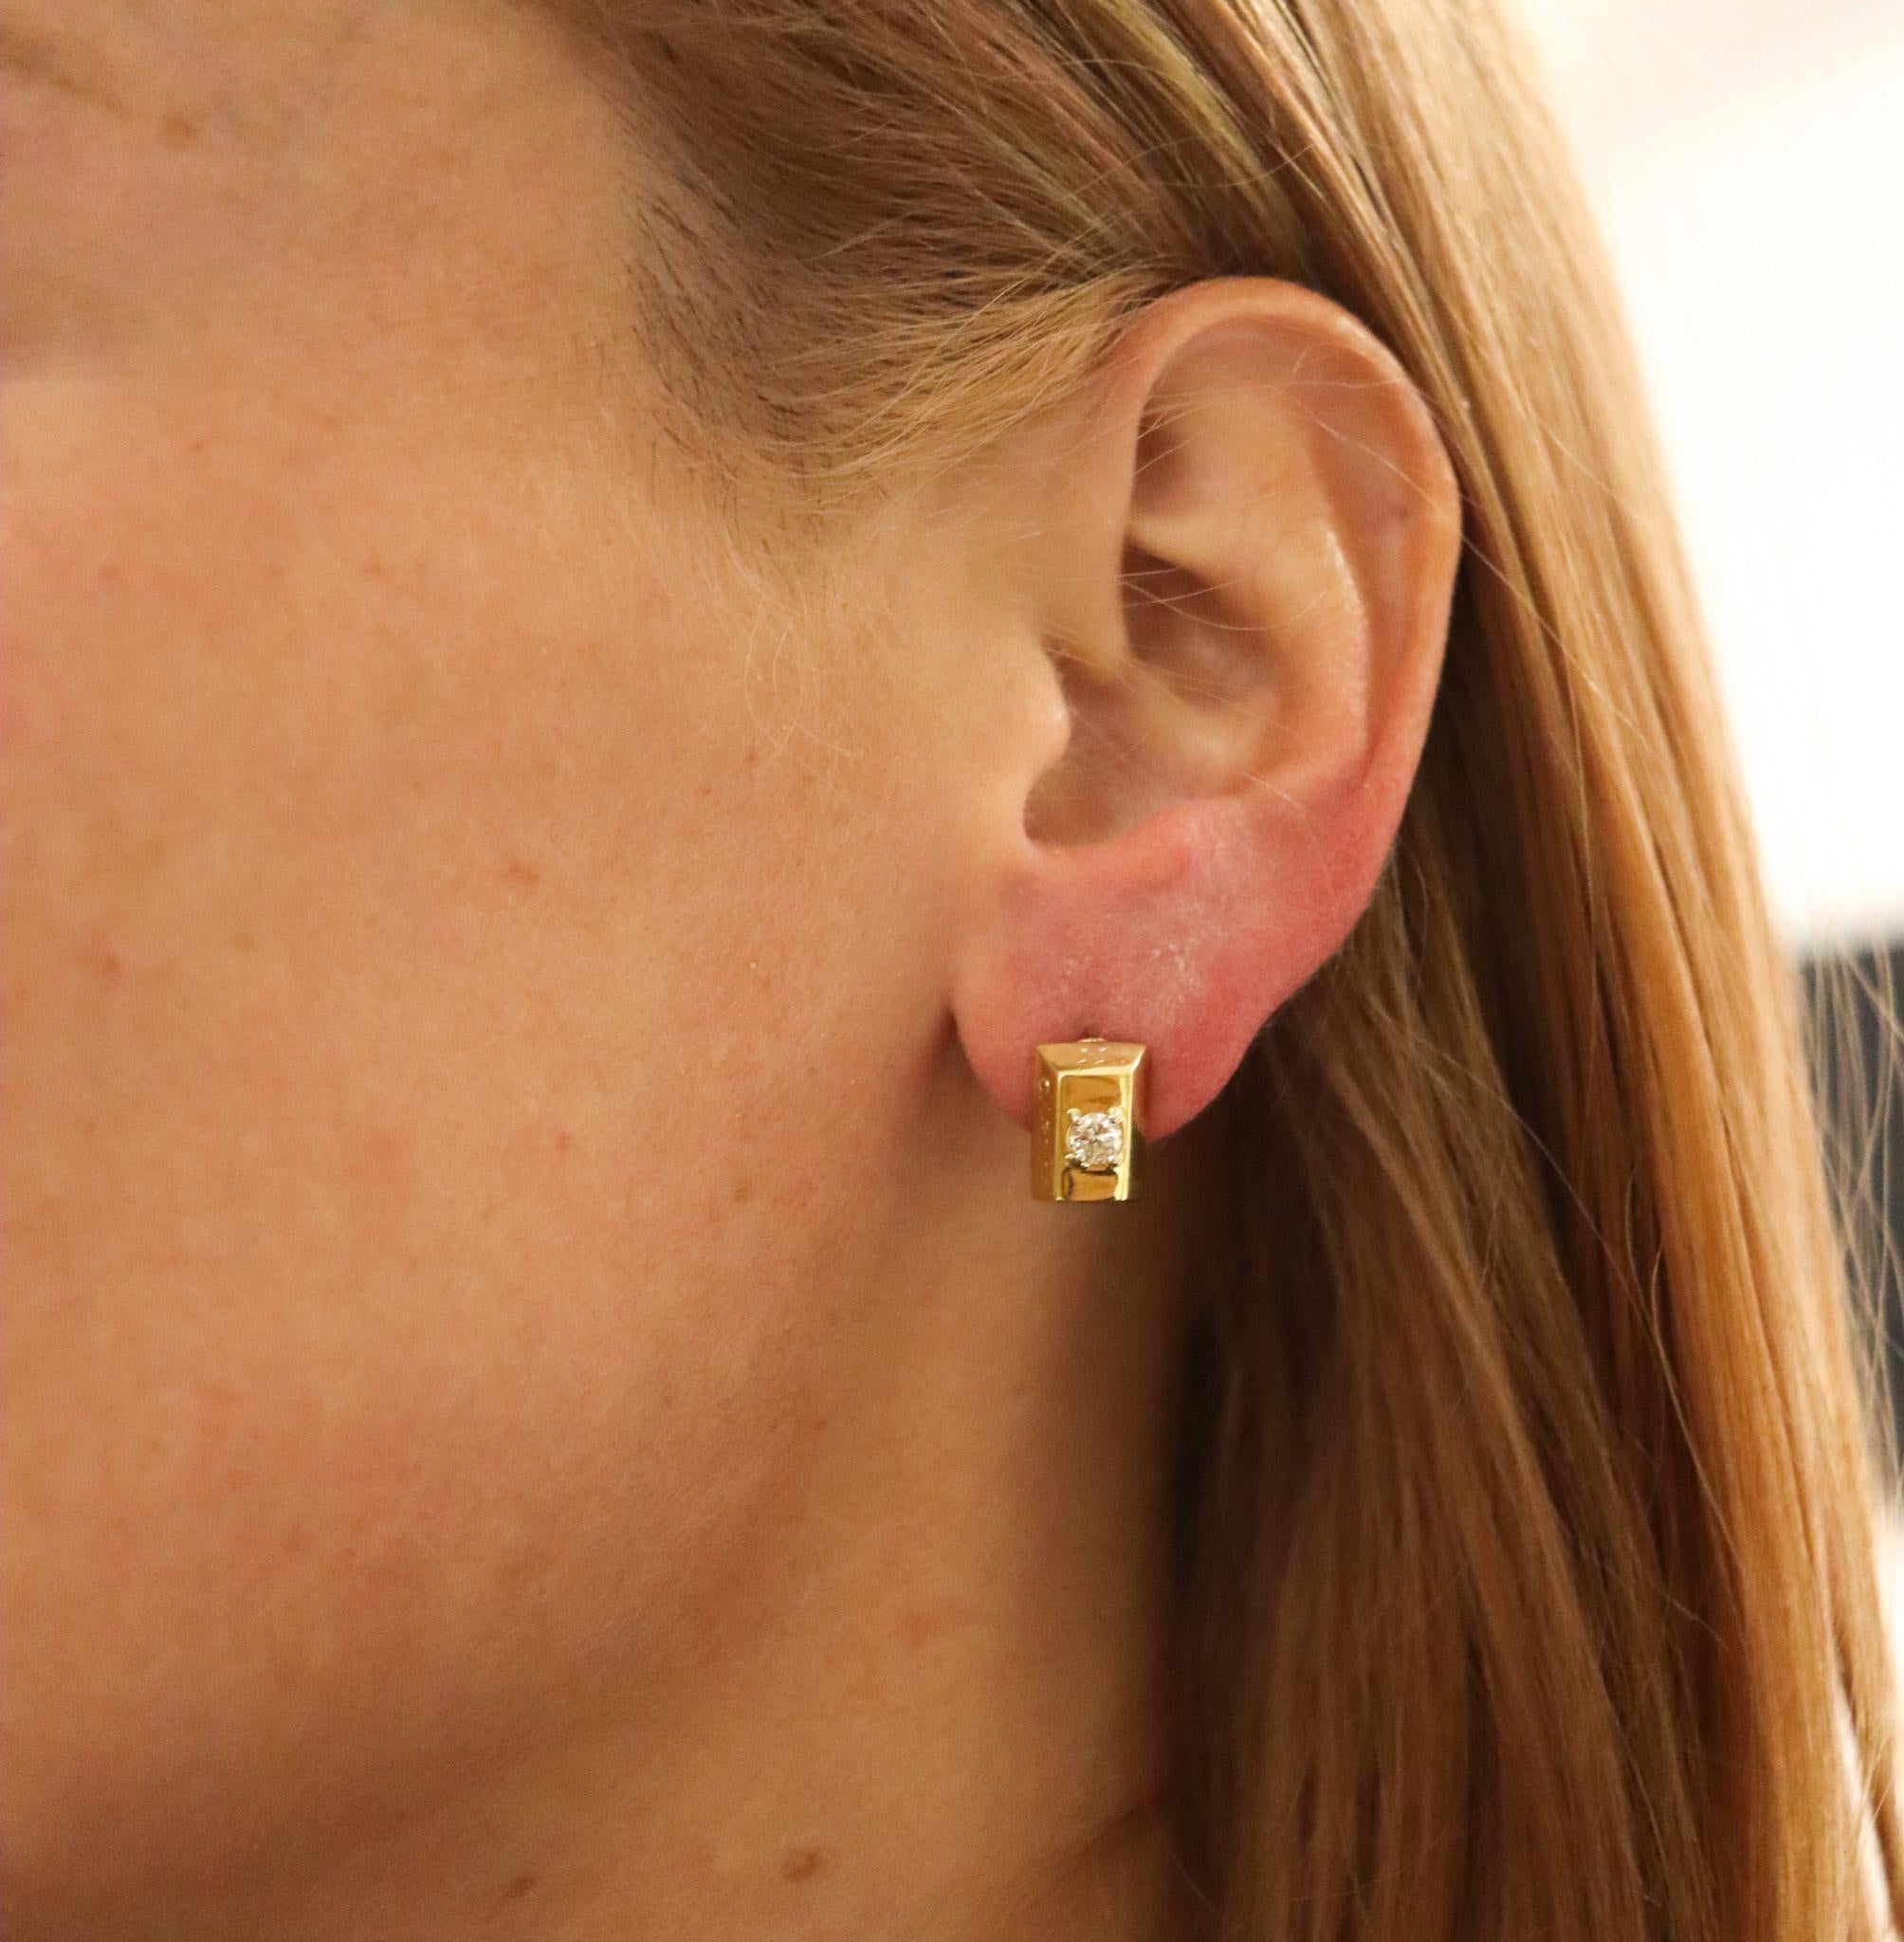 Boucles d'oreilles en forme de lingot conçues par Cartier.

Rare paire de boucles d'oreilles vintage en lingots de 1/8 d'once, créée par la maison de joaillerie Cartier, dans les années 1970. Ces boucles d'oreilles ont été réalisées sous la forme